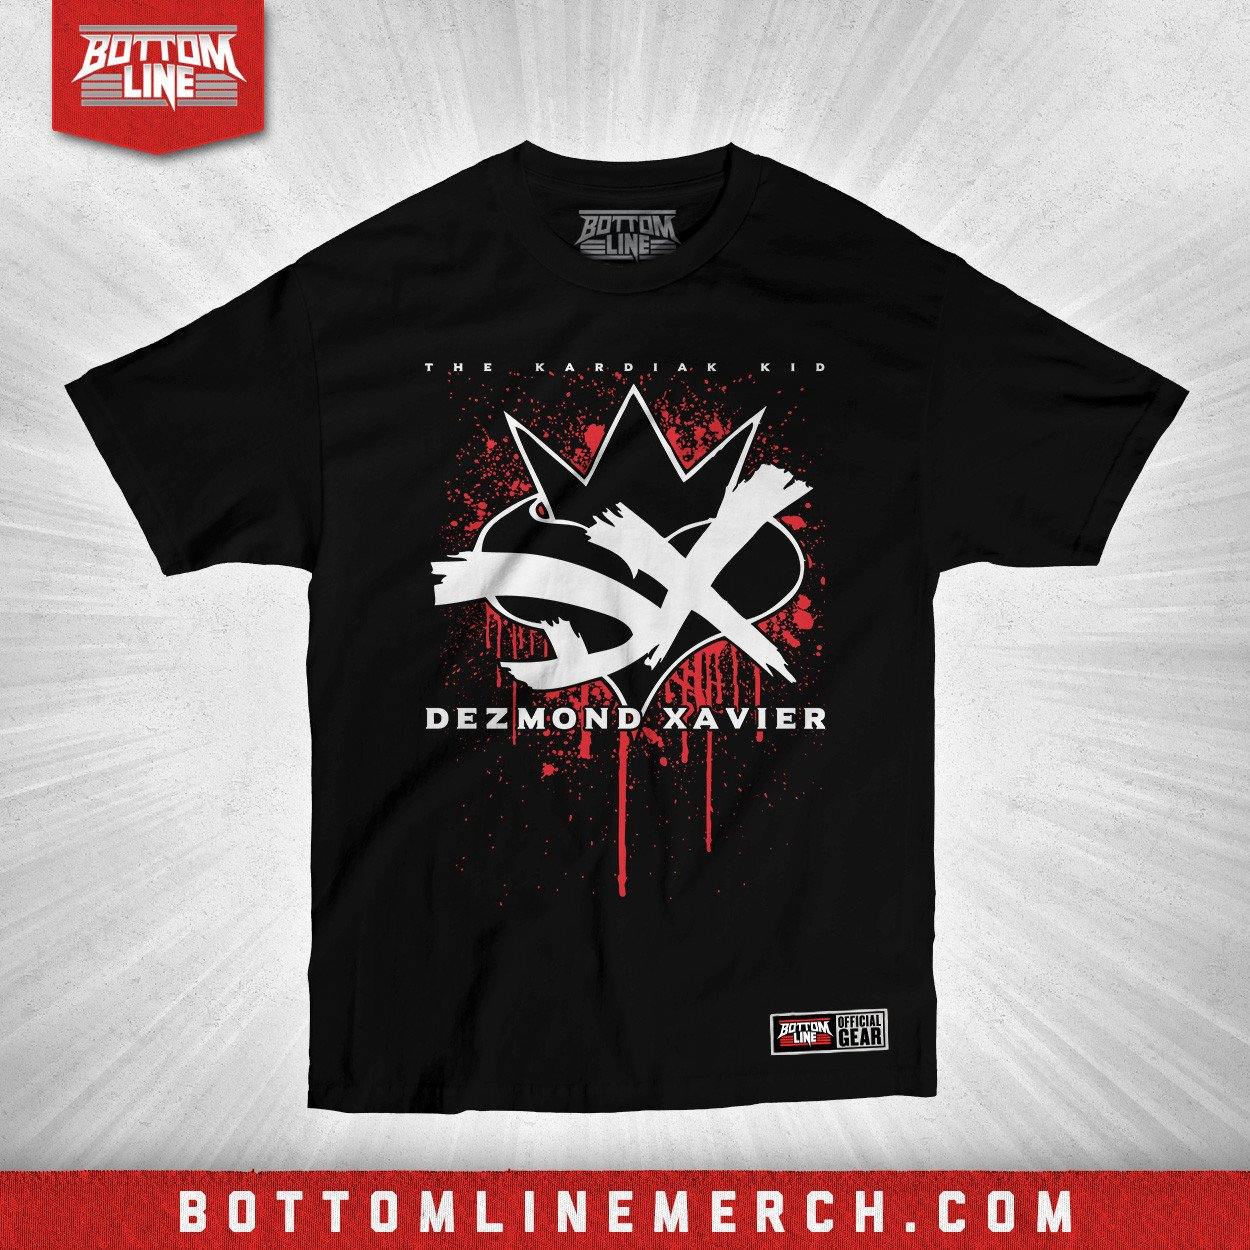 Buy Now – Dezmond Xavier "Bleeding Heart" Shirt – Wrestler & Wrestling Merch – Bottom Line